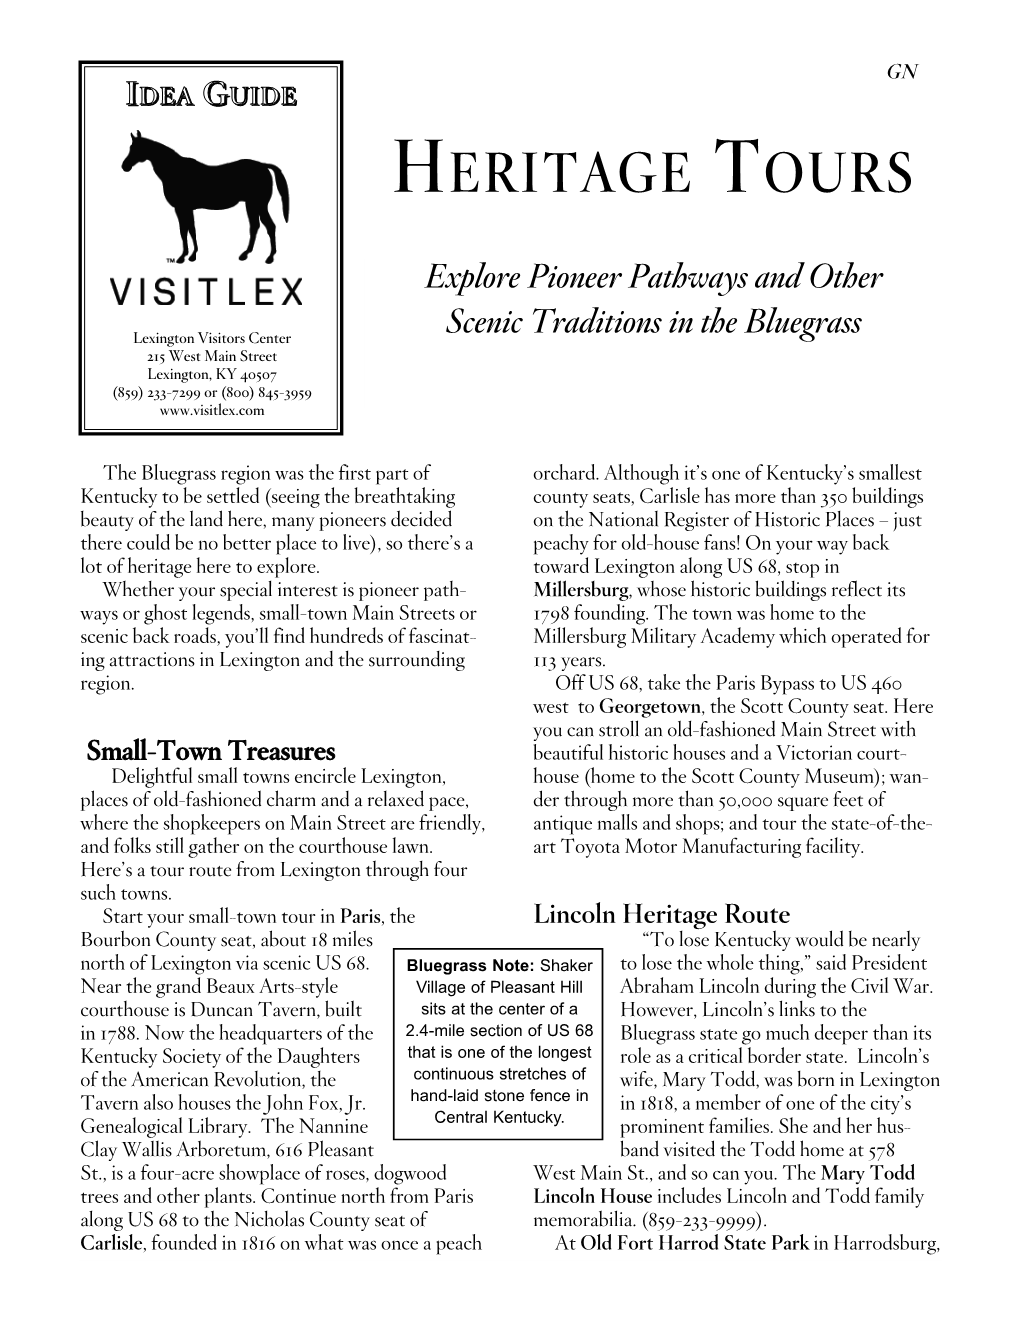 Heritage Tours: Lexington, KY